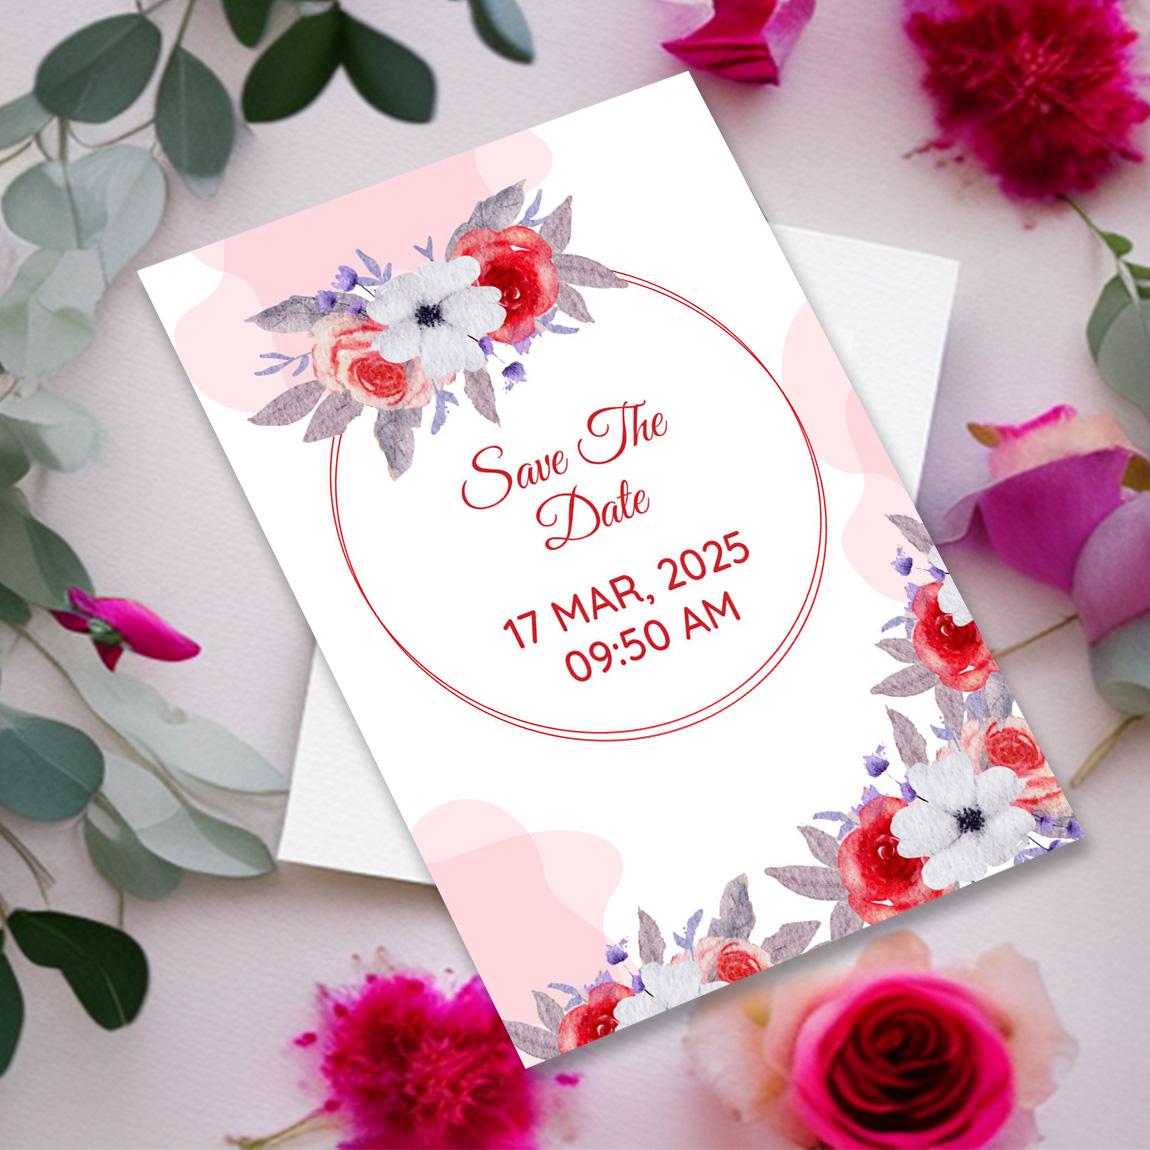 Bạn đang tìm kiếm mẫu thiệp cưới đẹp và tinh tế để tặng cho người thân của mình? Hãy xem qua hình ảnh về Elegant Wedding Invitation Card Template. Với thiết kế sang trọng, tinh tế và độc đáo, đây sẽ là một lựa chọn xuất sắc cho ngày cưới của bạn.